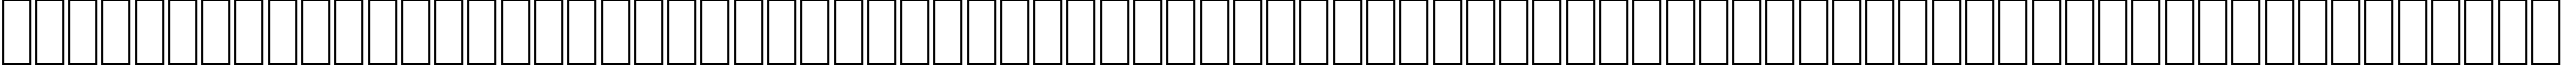 Пример написания английского алфавита шрифтом AGA Battouta Regular